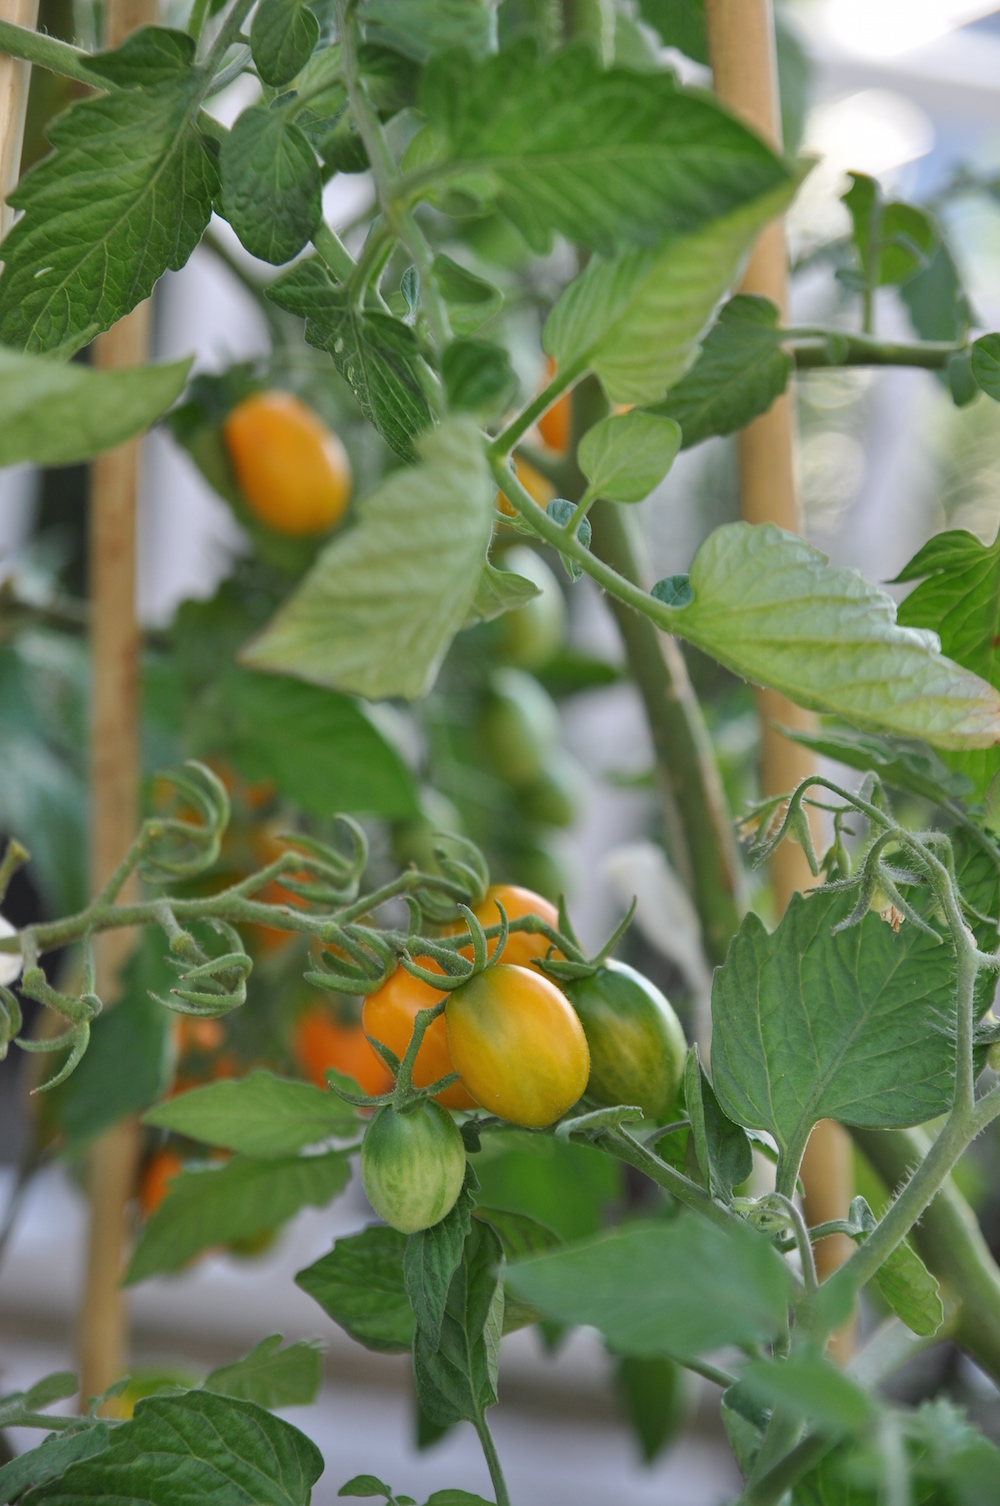 edible container garden - tomatoes